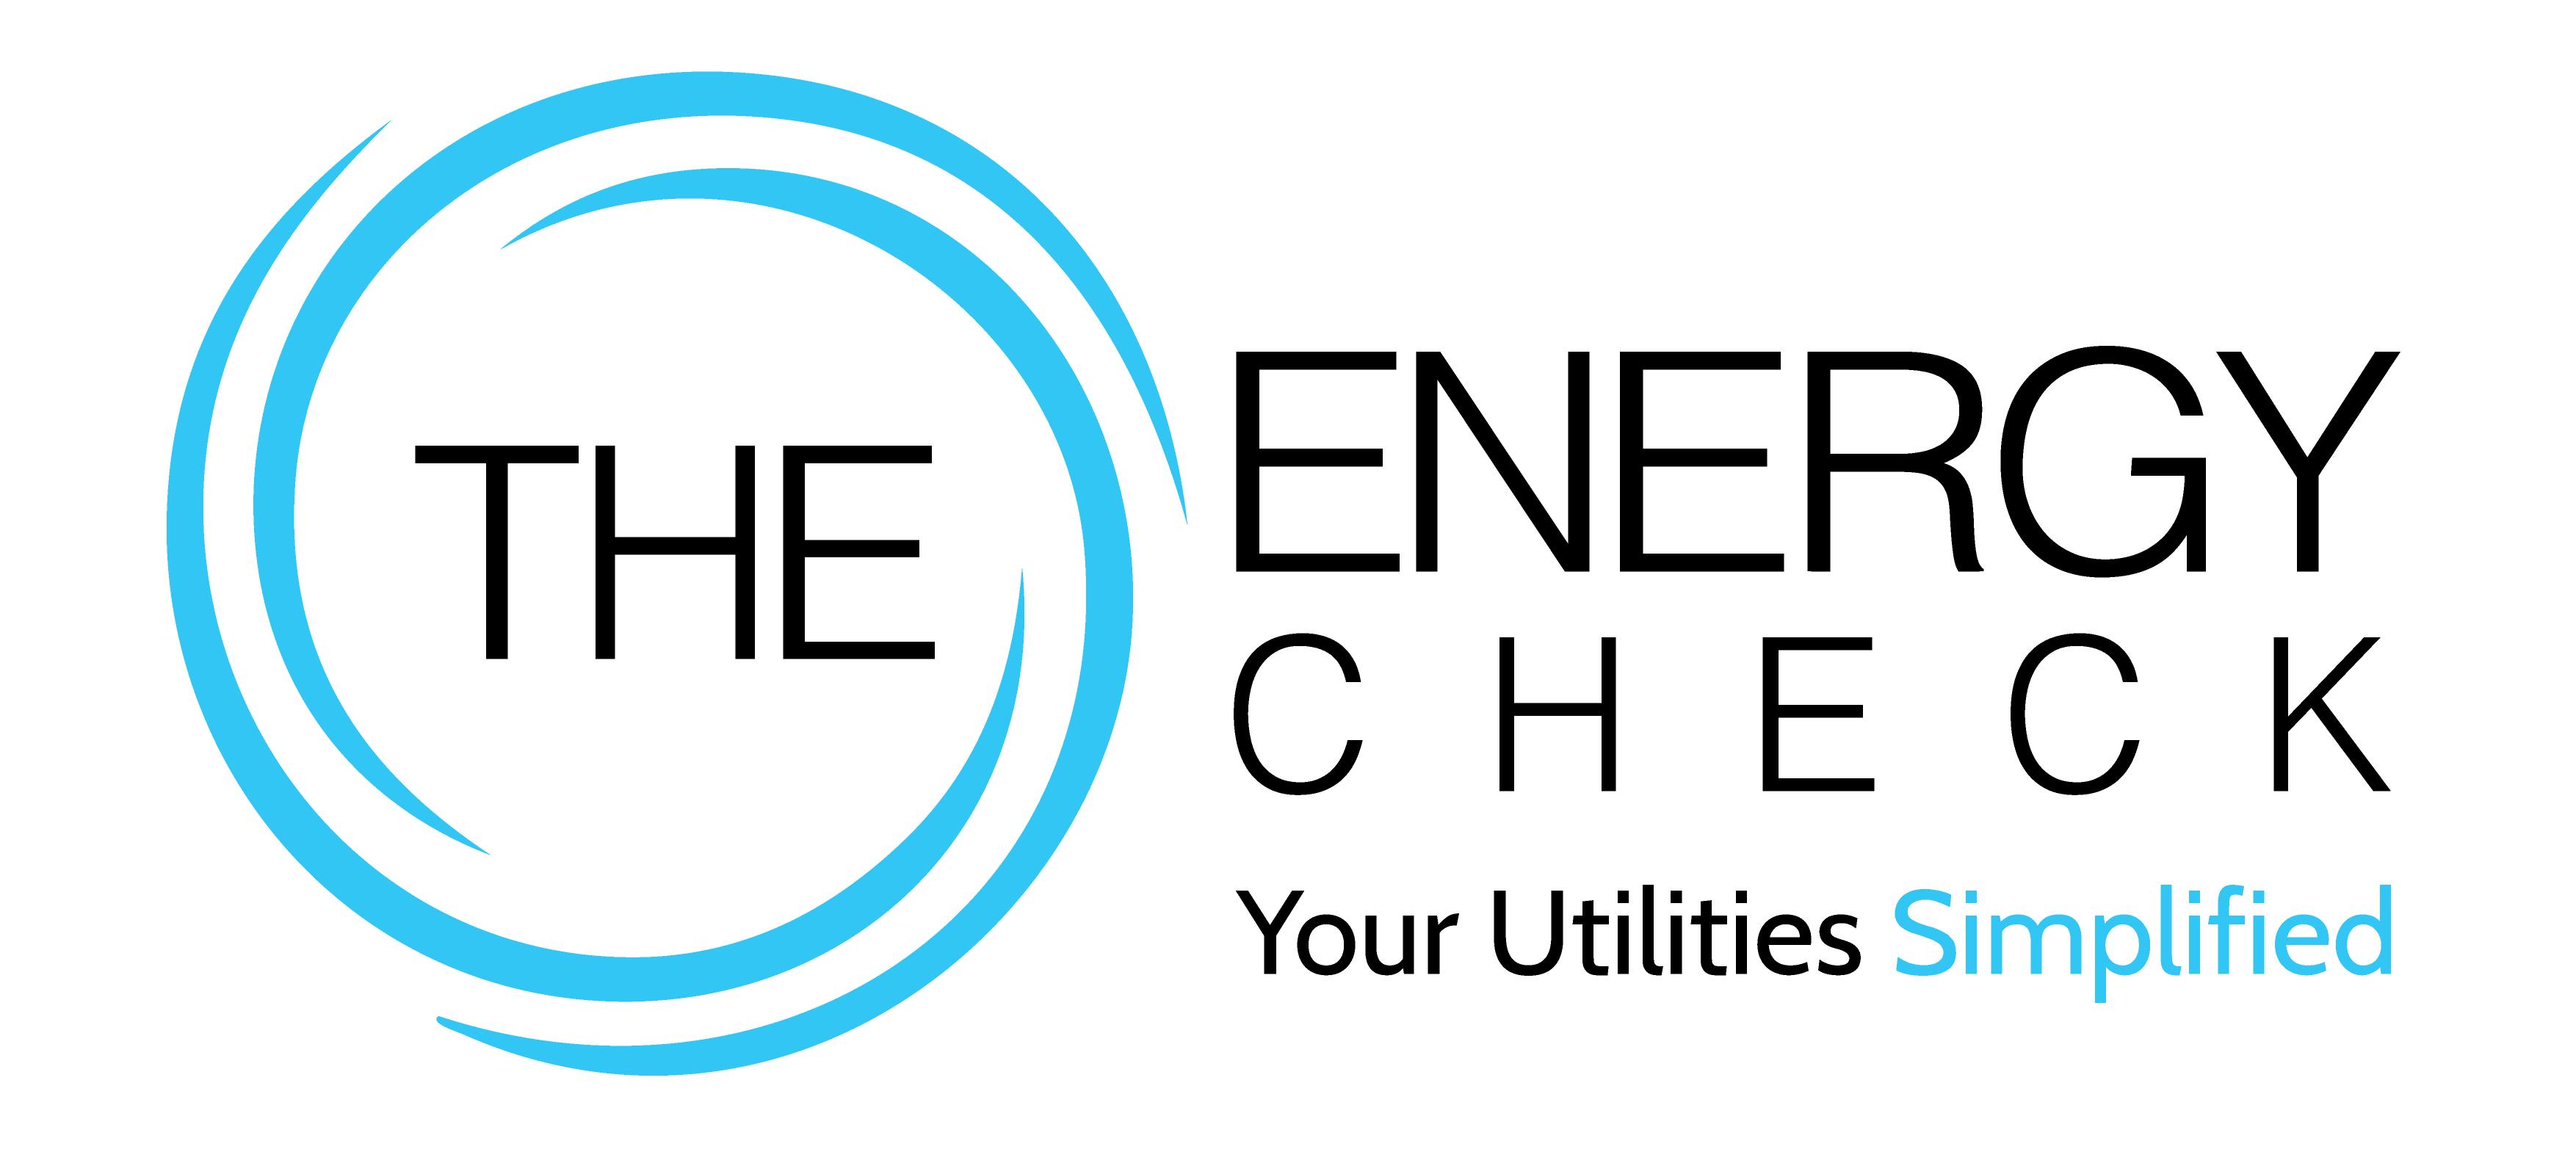 The Energy Check | NEECC